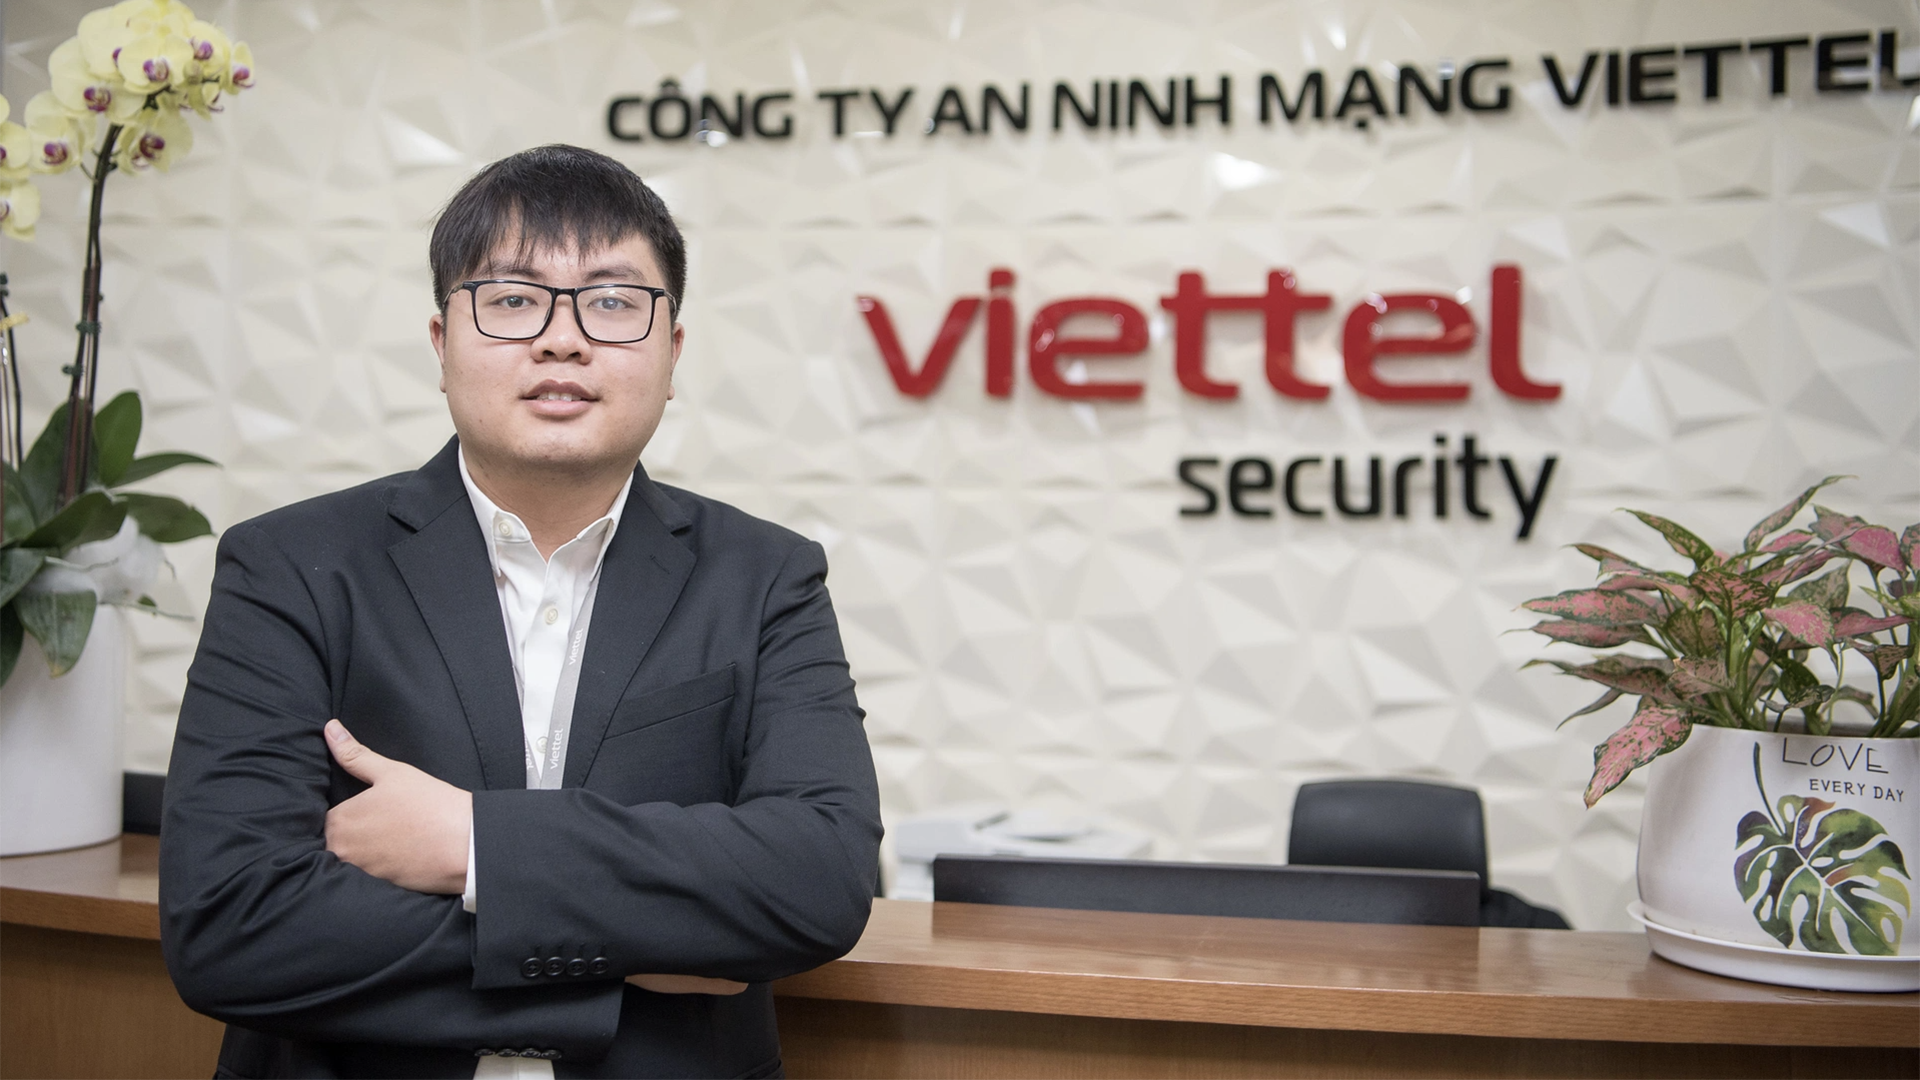 Chân dung cặp đôi hacker Việt khiến cộng đồng bảo mật thế giới phải thán phục - Ảnh 2.